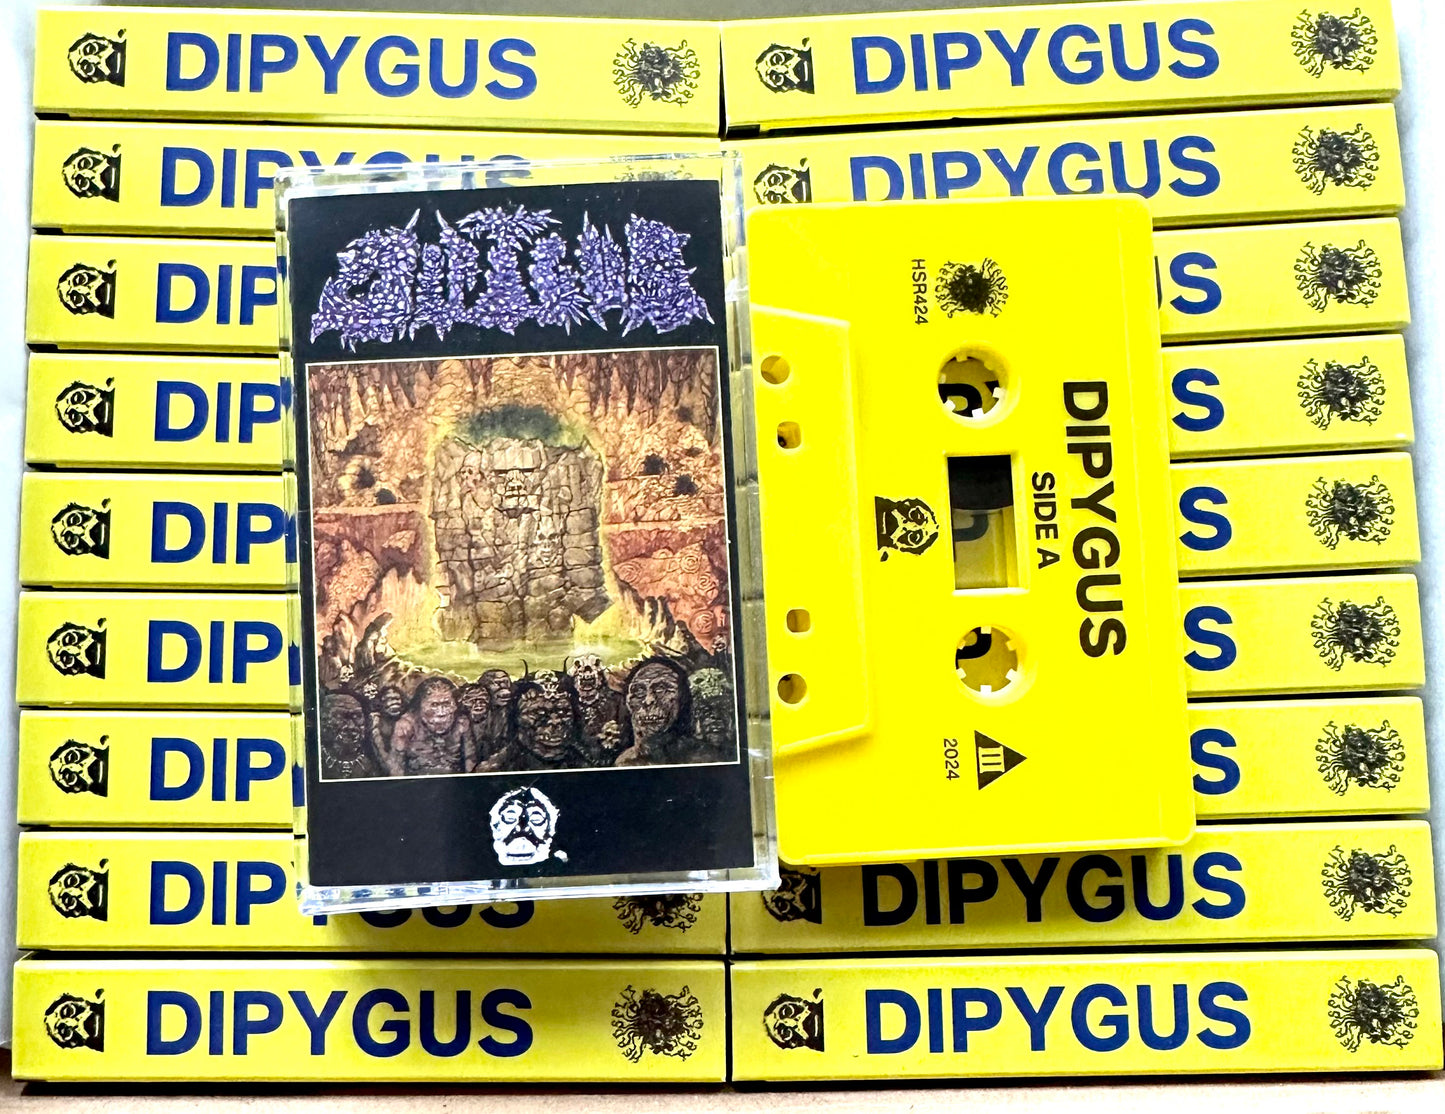 Dipygus - Dipygus cassette tape